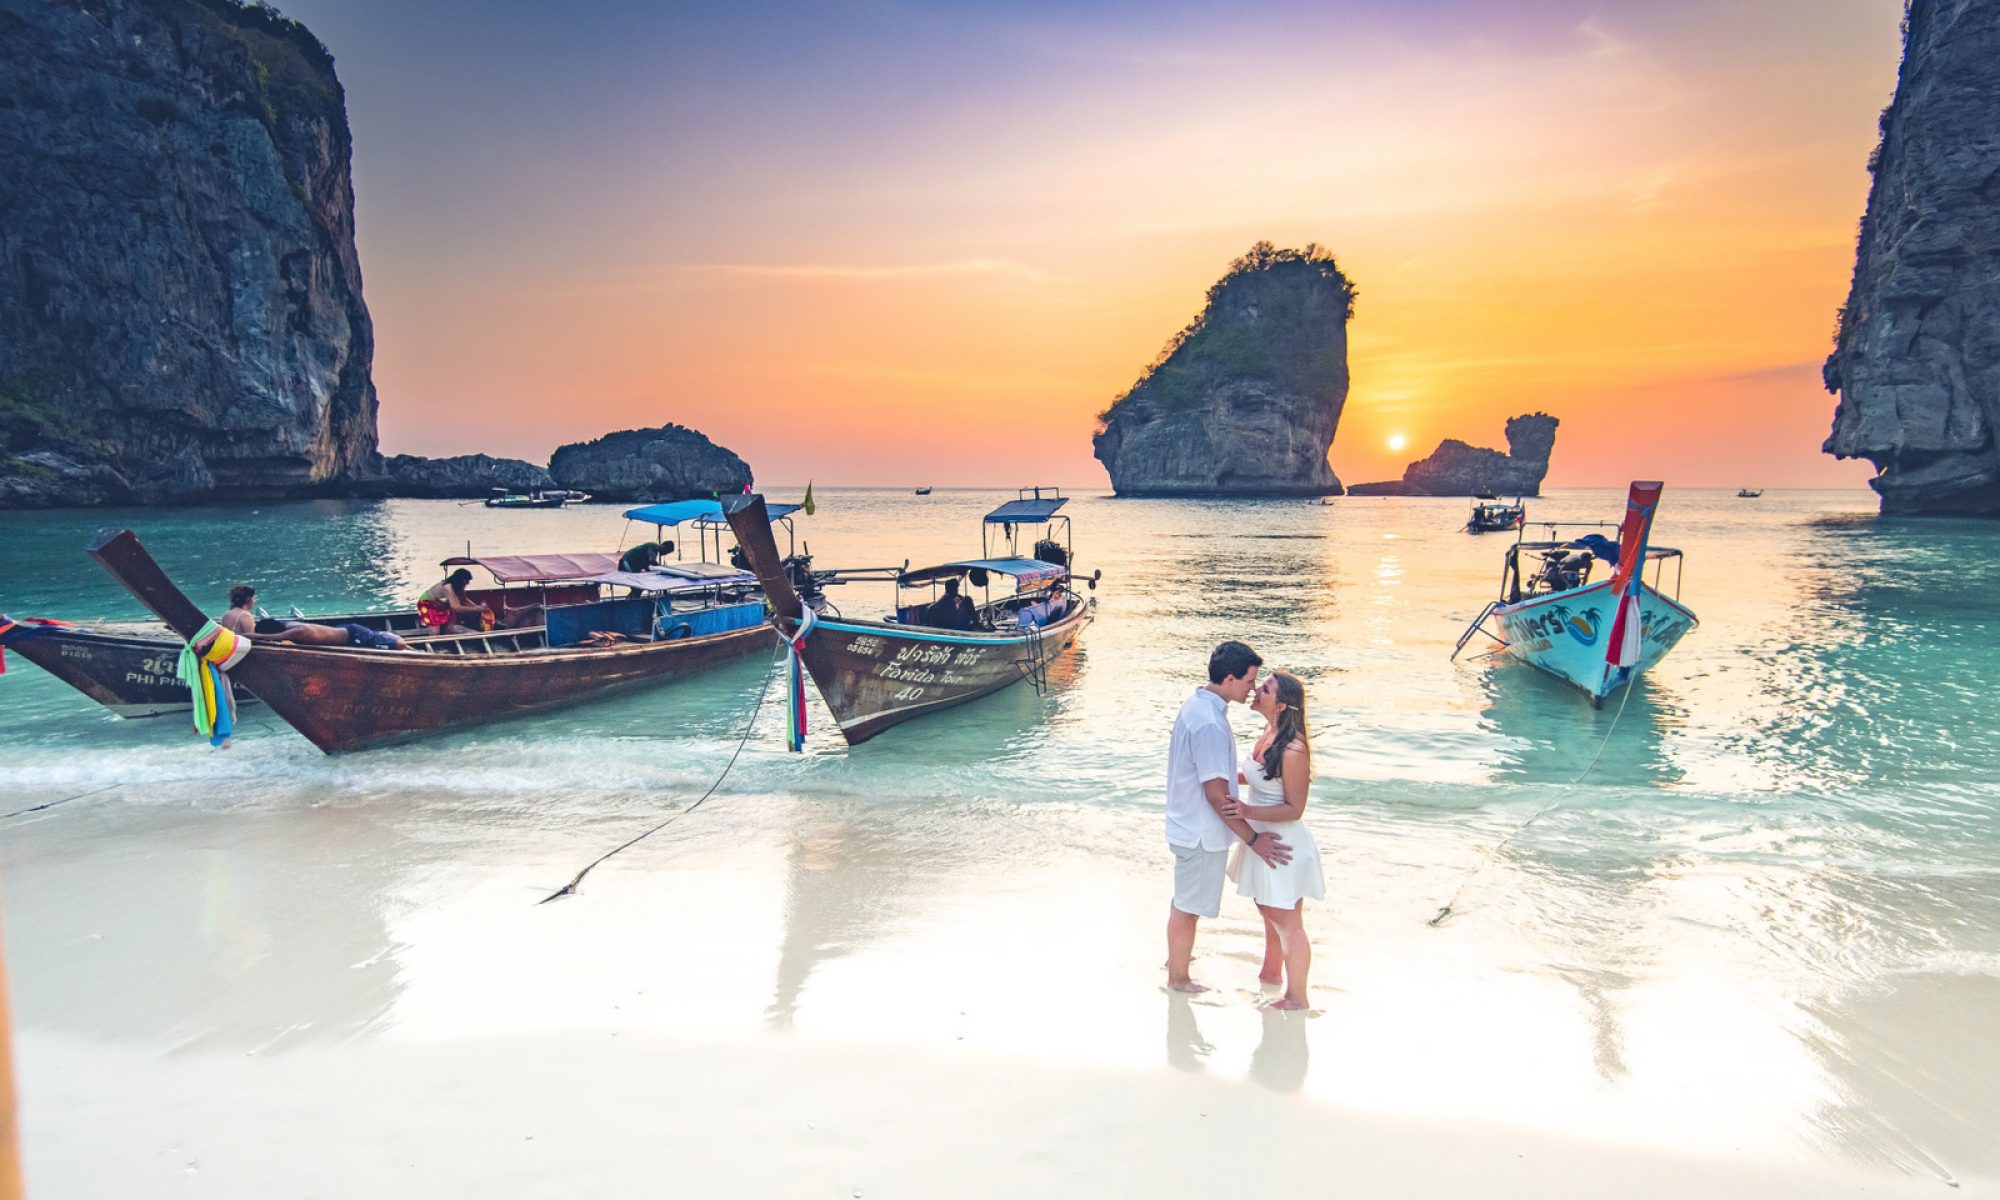 Honeymoon photoshoot at Phi Phi island